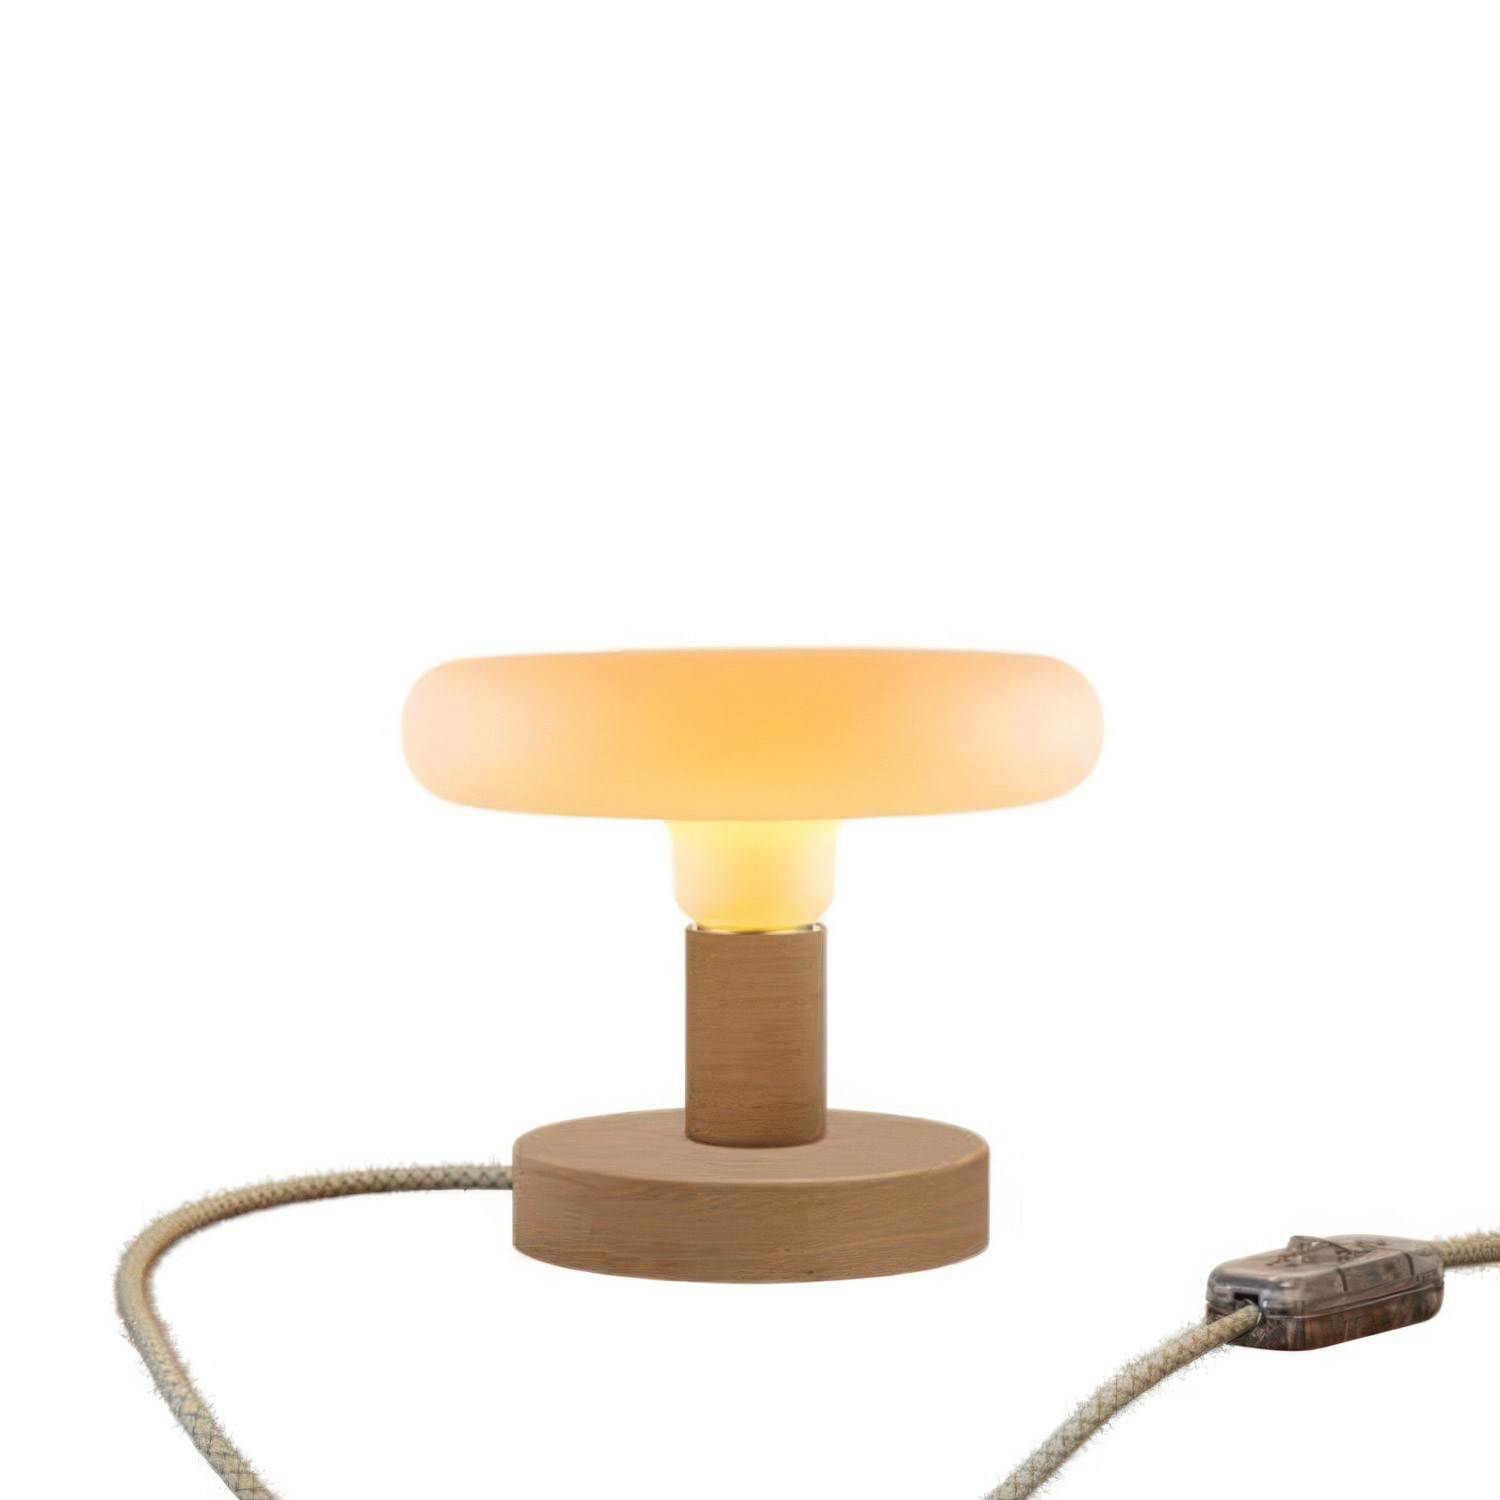 Lampa de masă din lemn Posaluce Dash cu mufă cu două pini